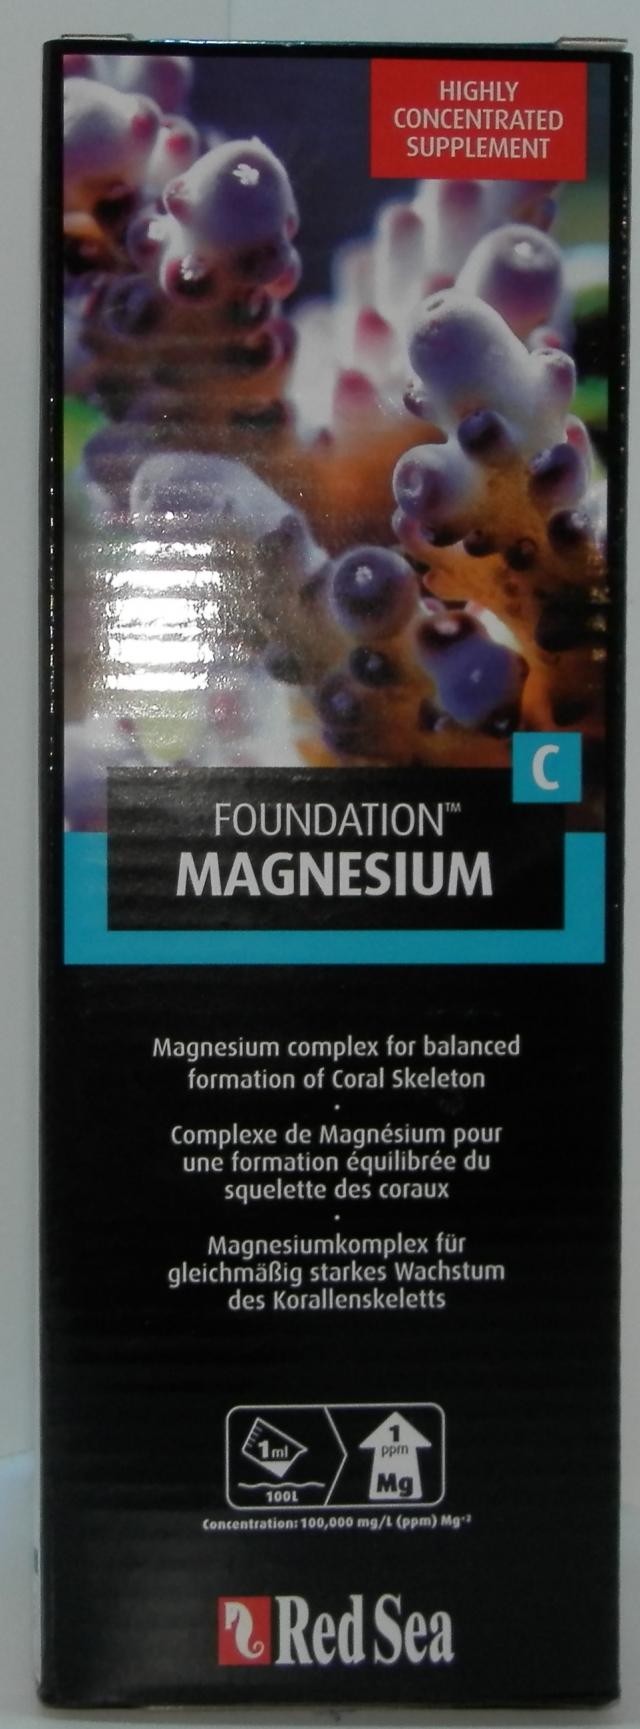 C foundation magnesium 1000ml